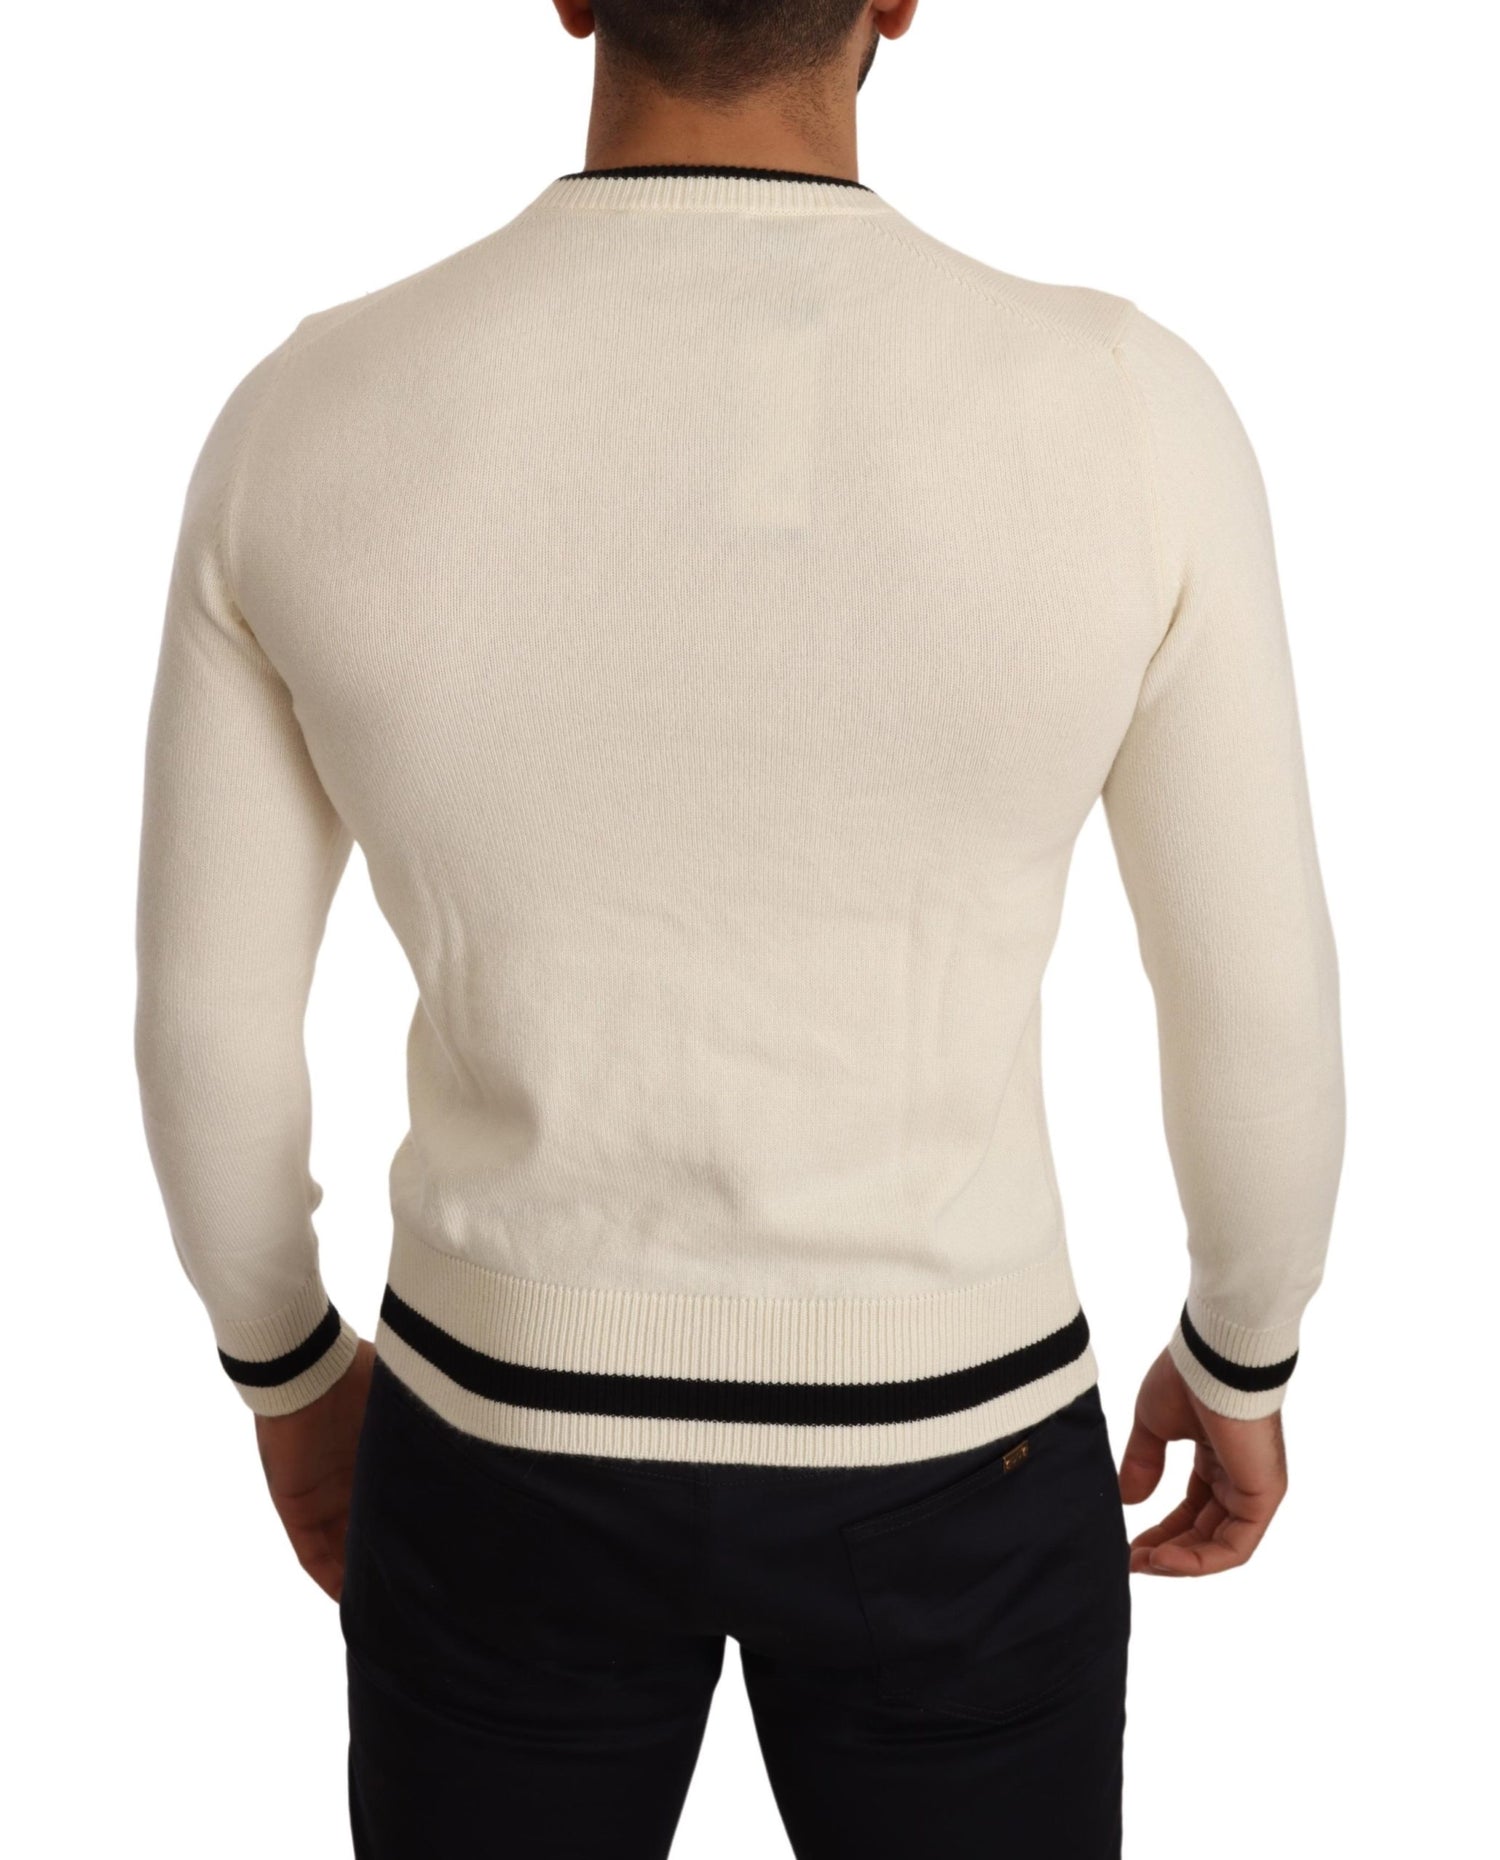 White Heraldic Cashmere Pullover Sweater